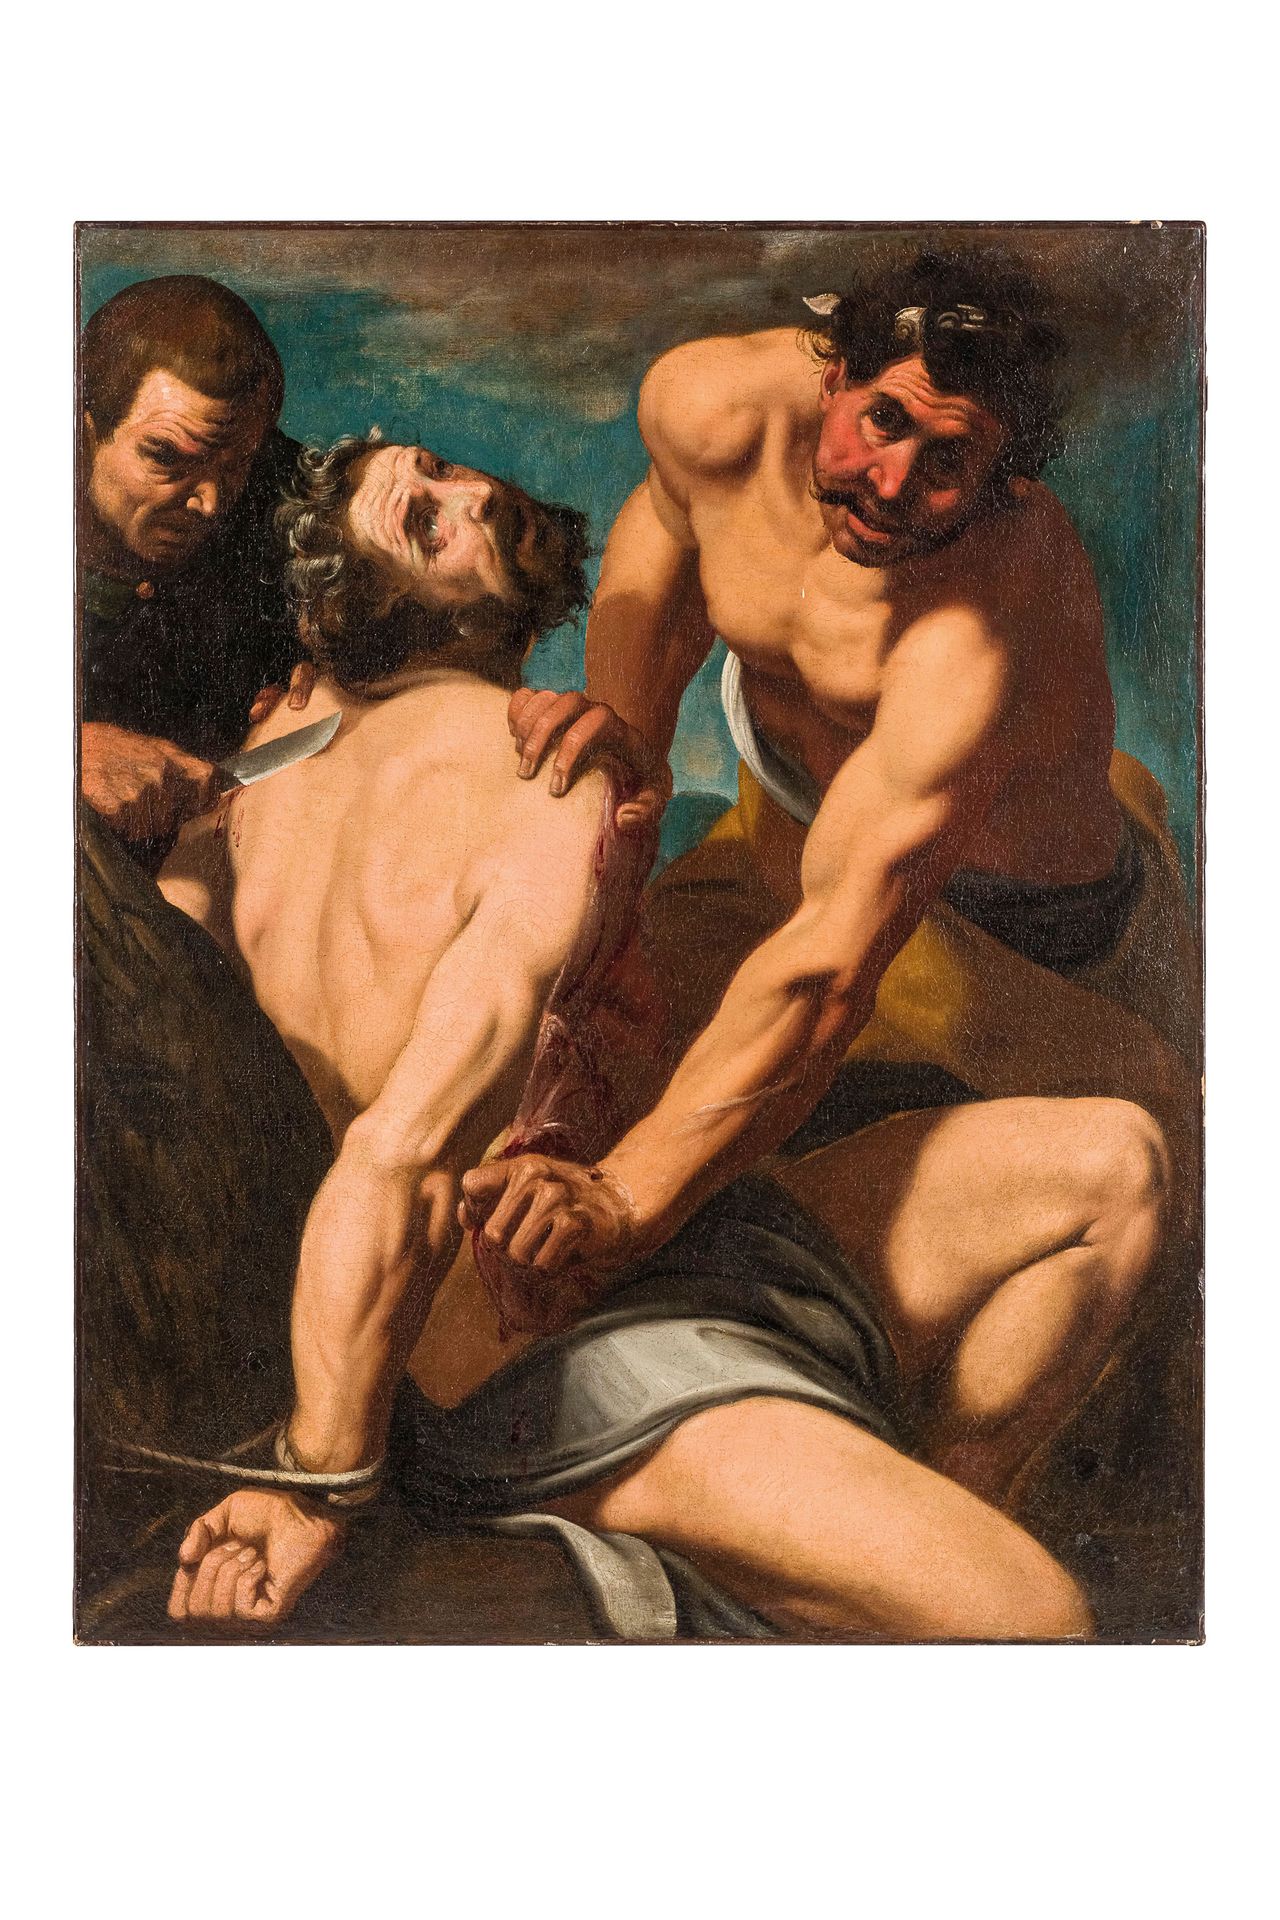 PITTORE DEL XVII SECOLO Martirio di San Bartolomeo
Olio su tela, cm 99X79